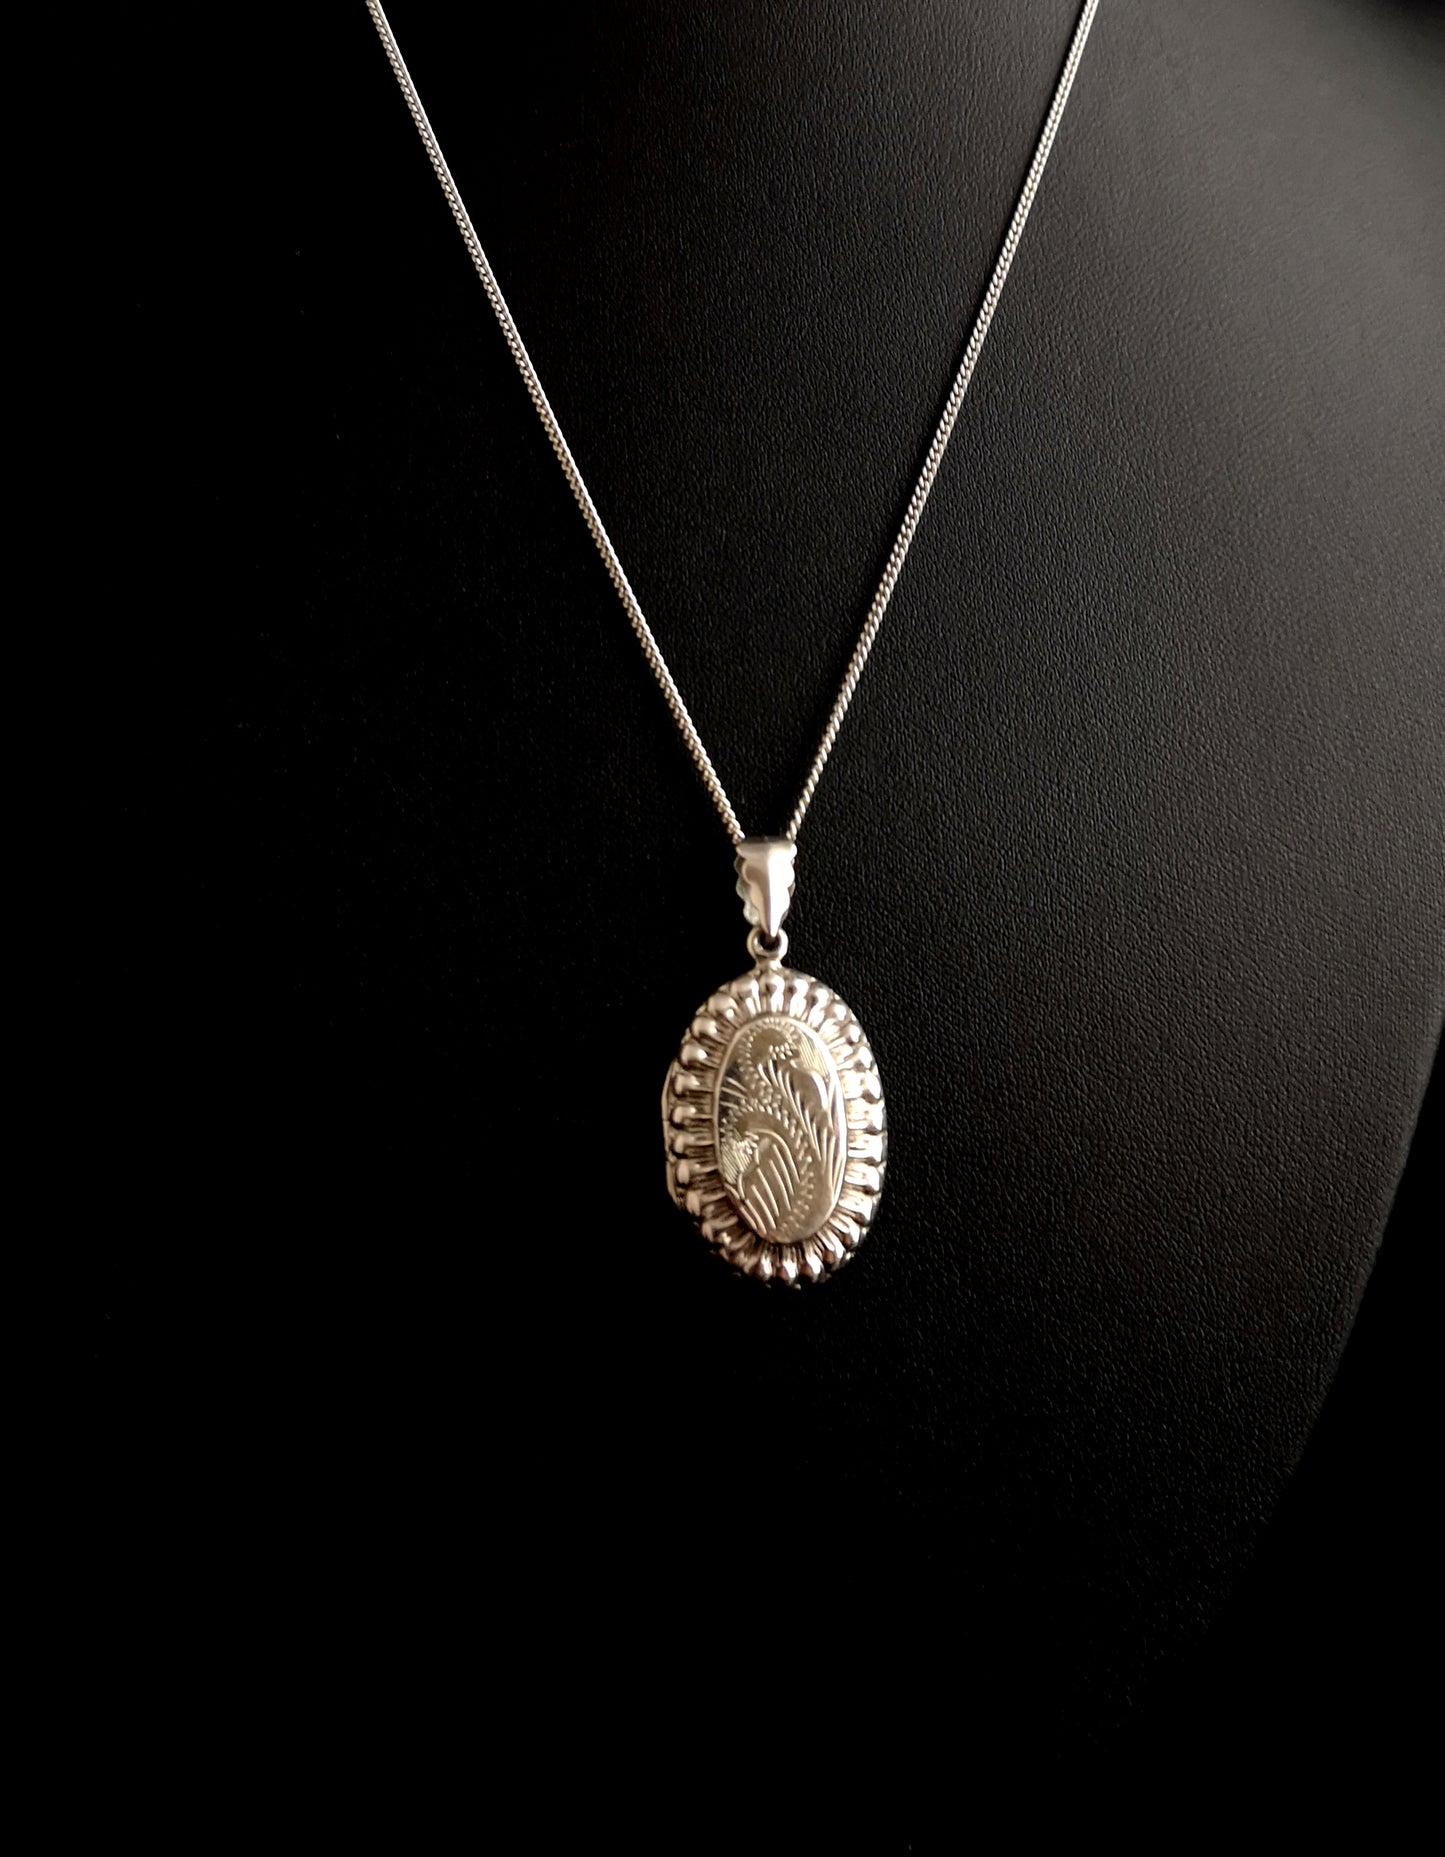 Vintage sterling silver locket necklace